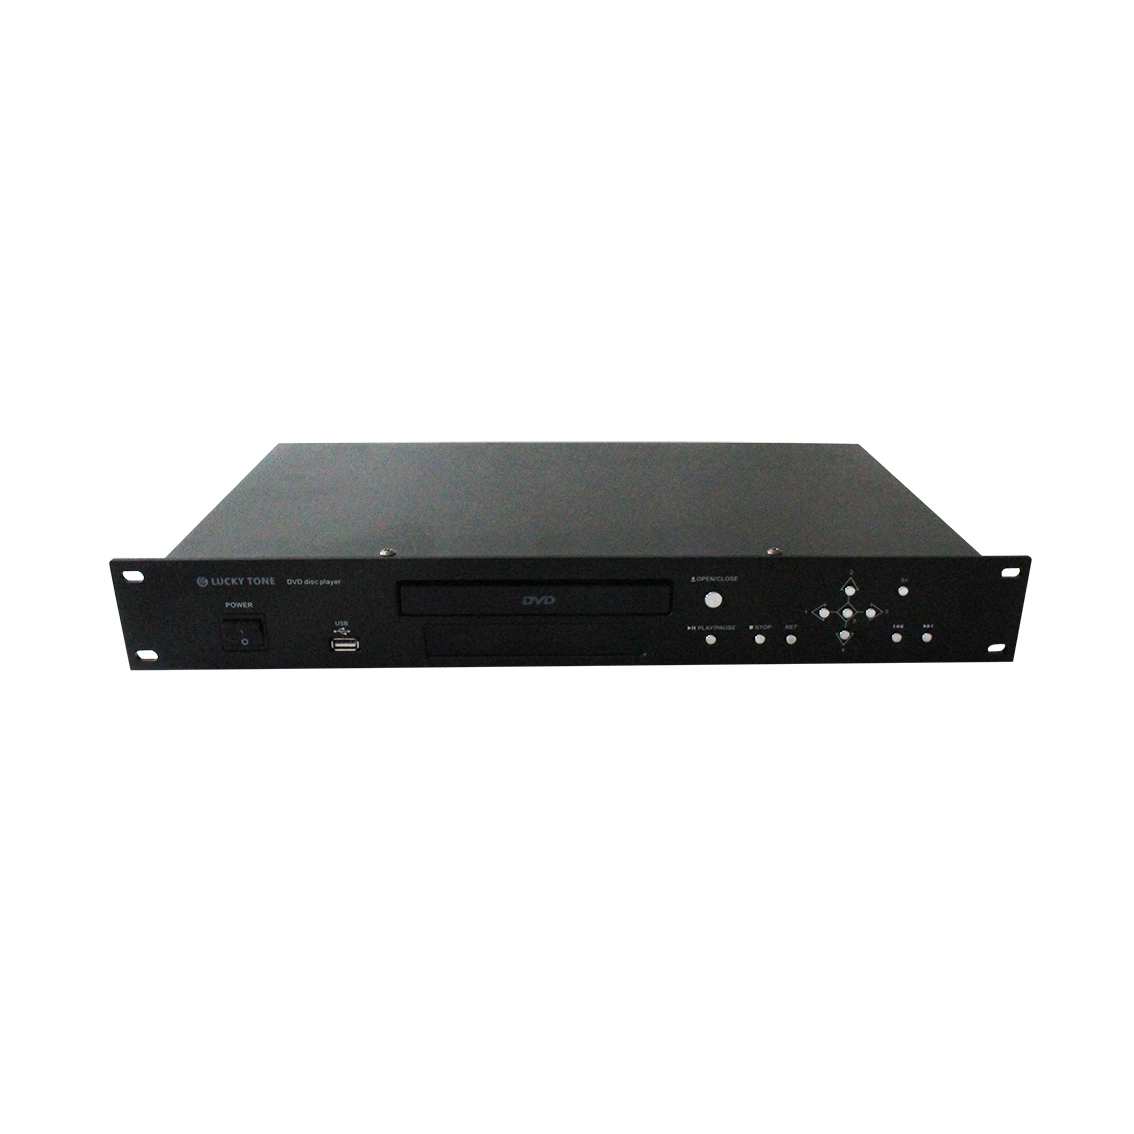 O áudio de DVD Player com porta USB Sopport DVD, VCD, CD HDCD, DIVX, SVCD, MPEG4, NP3, WMA, CD-R/RW disco de formato